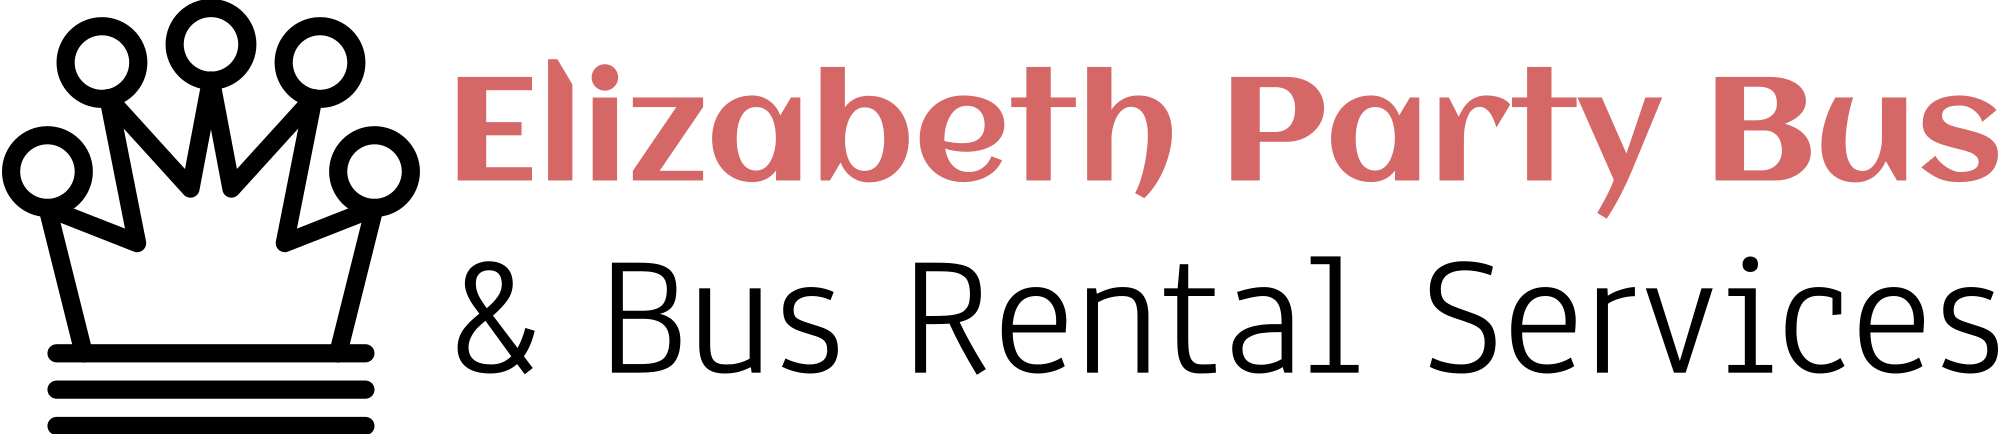 Elizabeth Party Bus Company logo